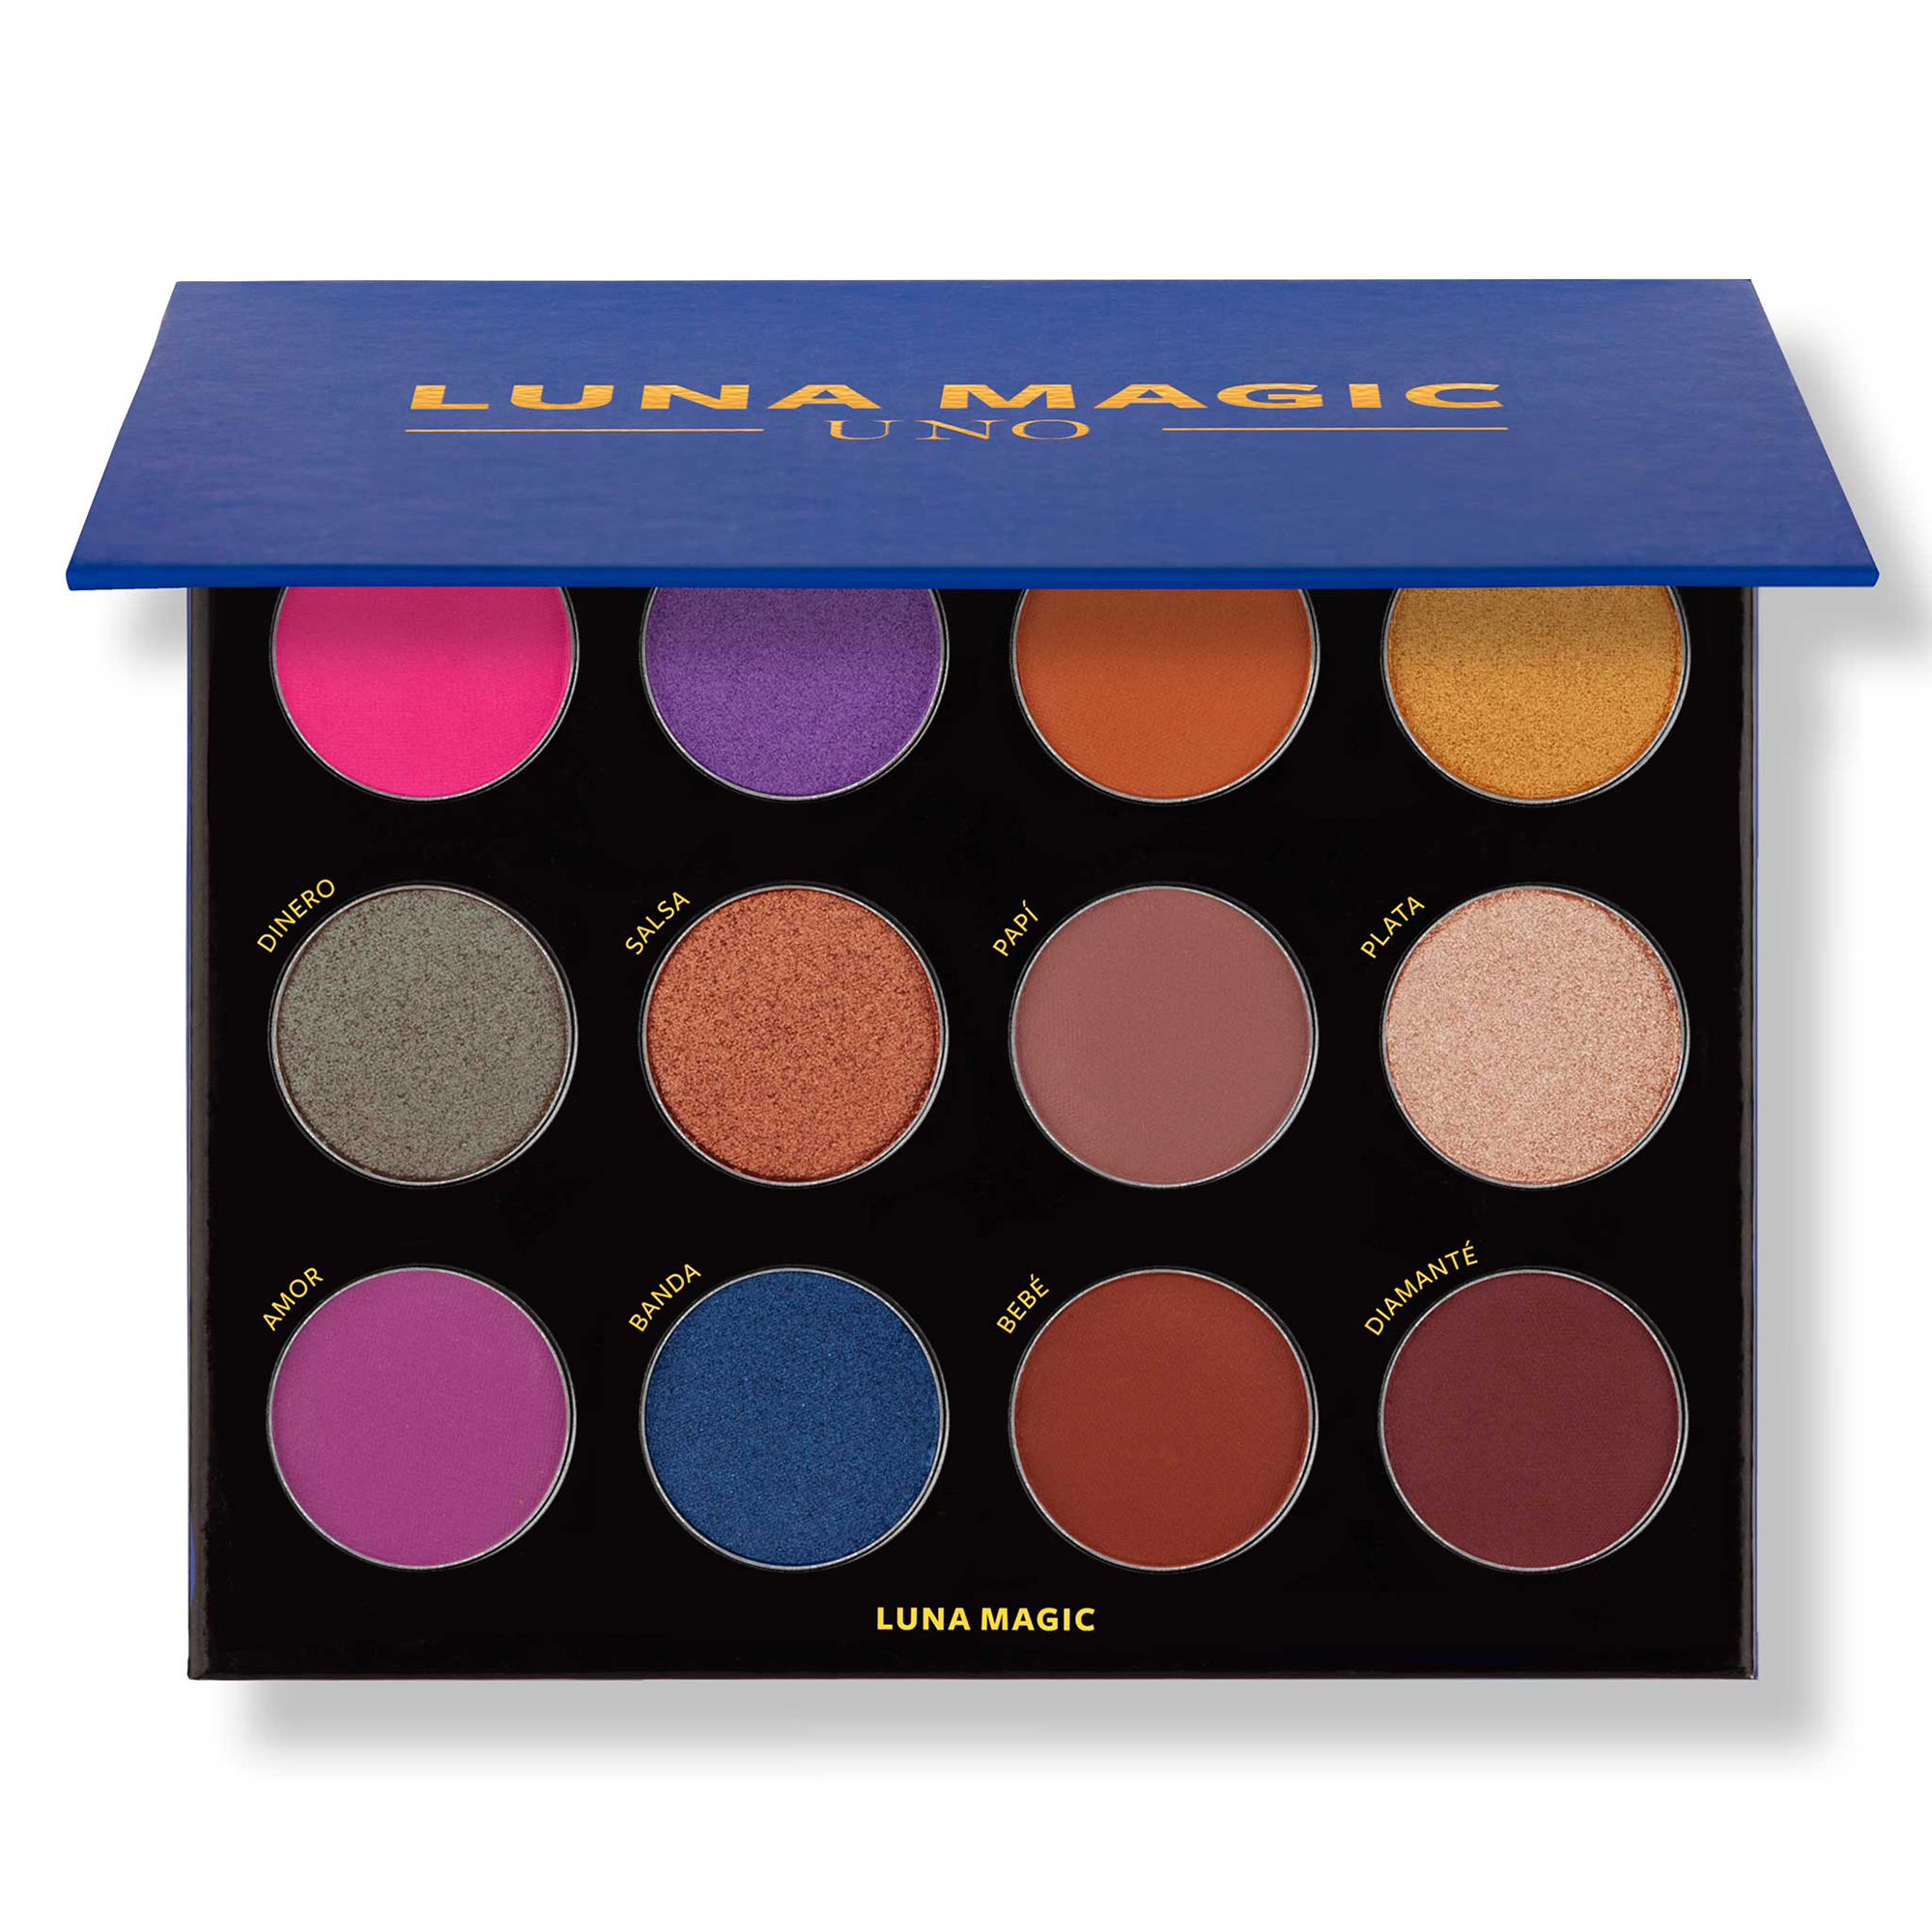 Luna Magic Shadow Makeup Palette, 12 Colors - image 1 of 6